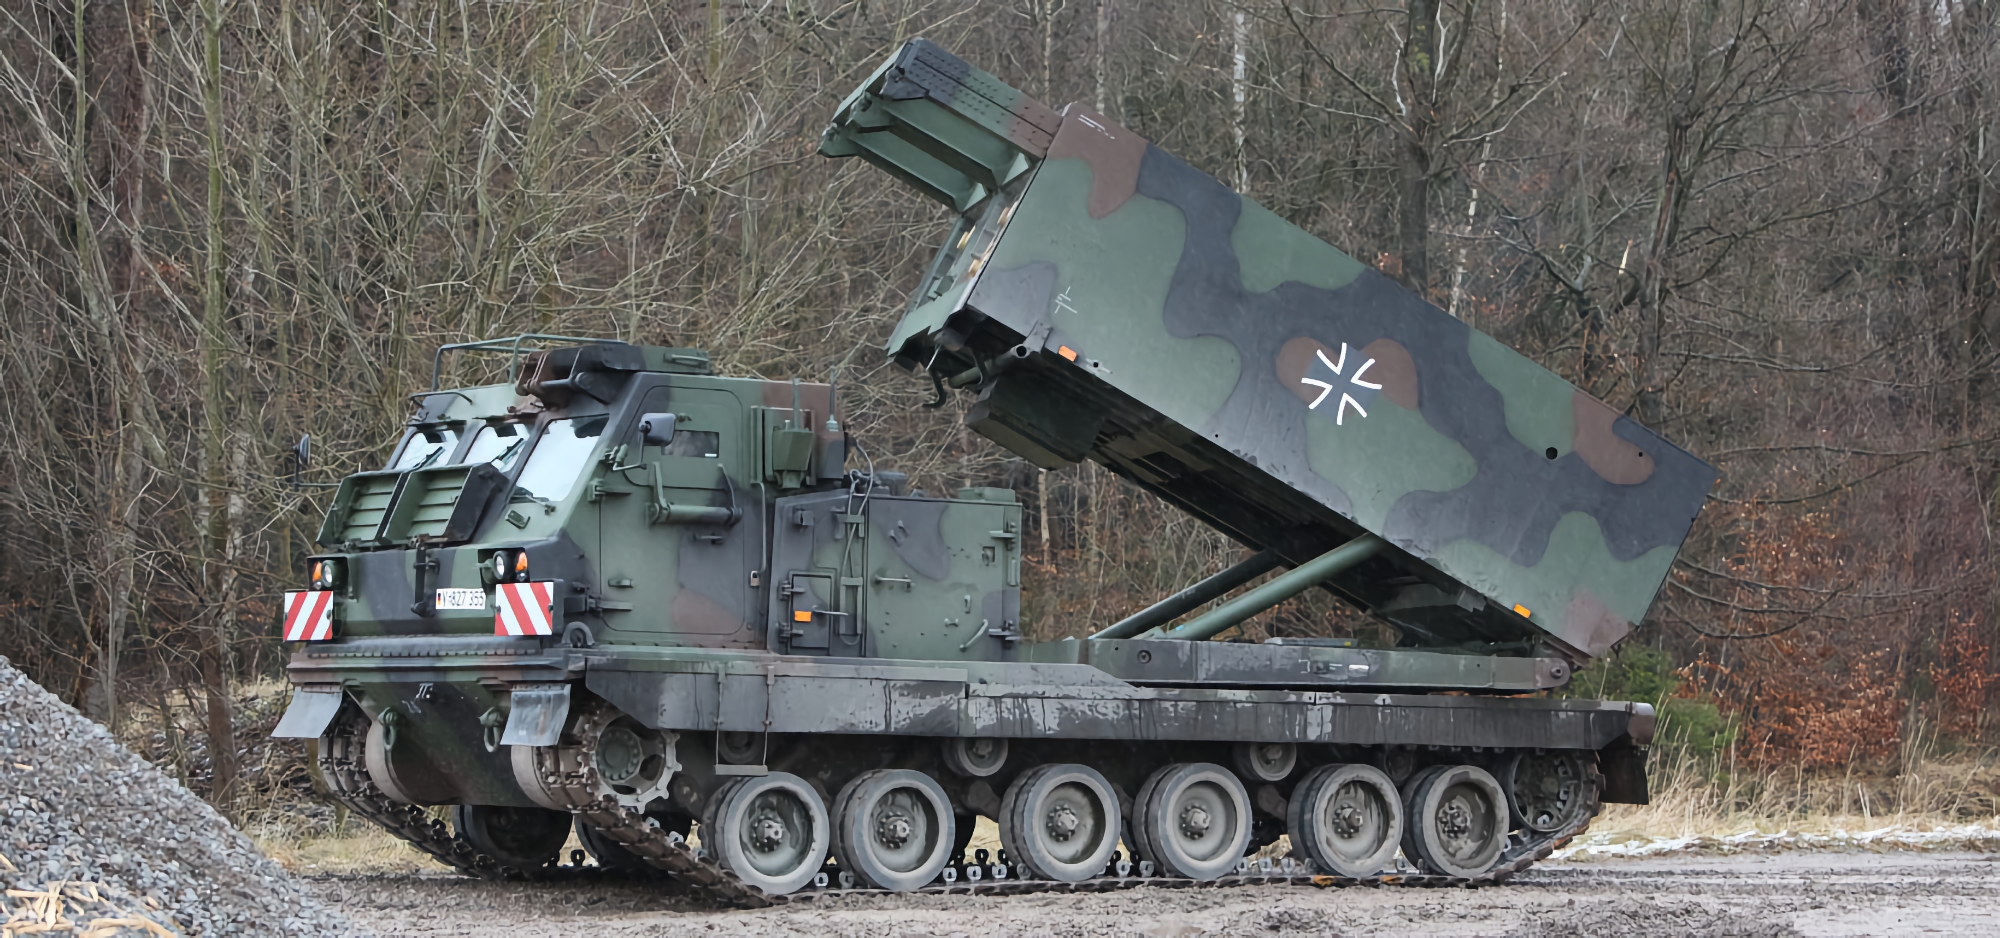 Niemcy przekazały Ukrainie Mars II MLRS i zamierzają wysłać systemy obrony powietrznej IRIS-T, a także trzy dodatkowe działa samobieżne PzH2000